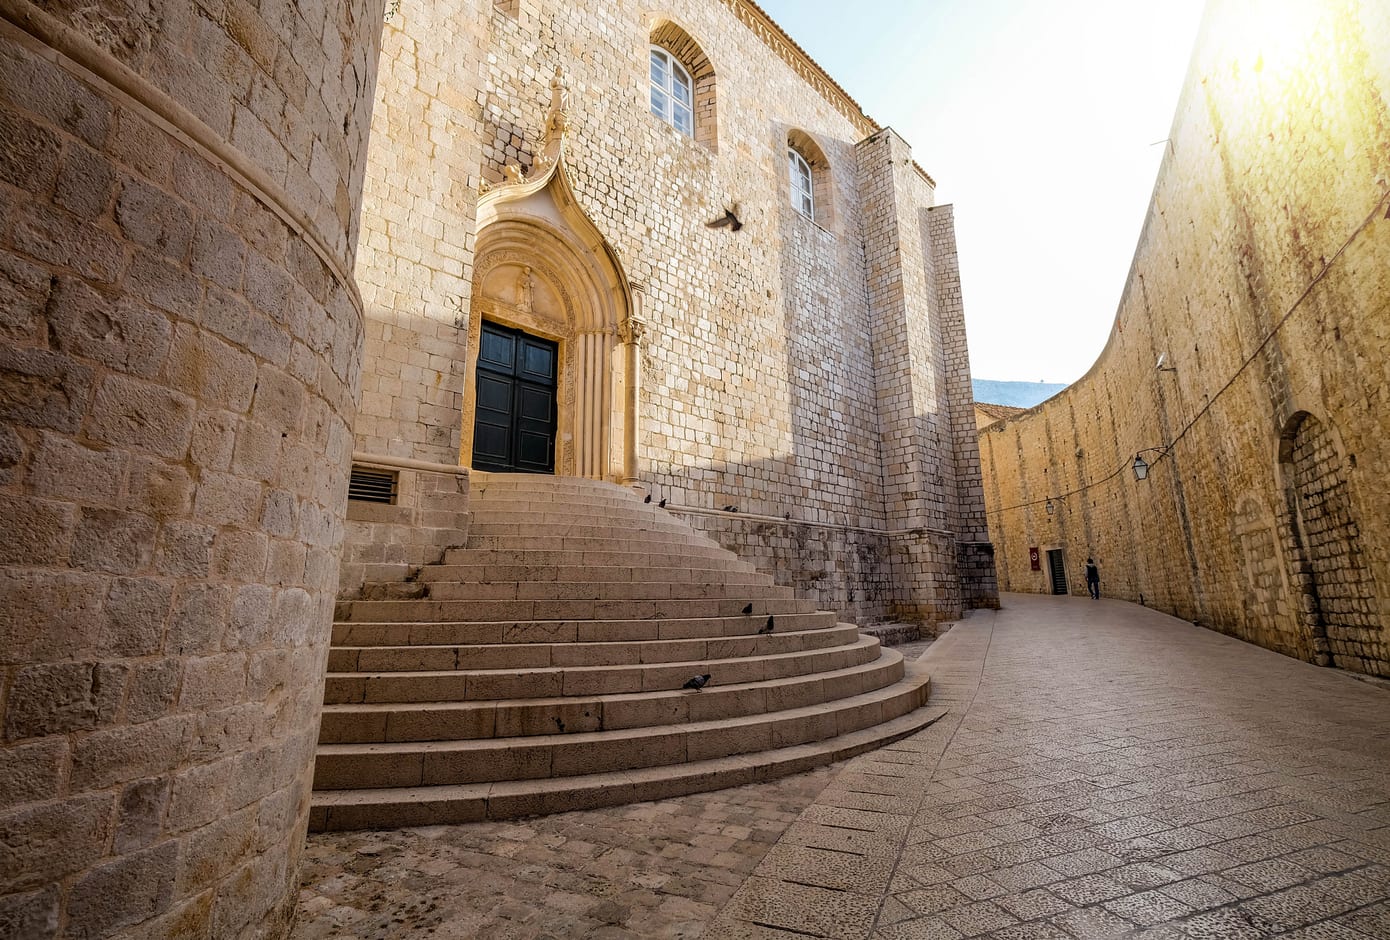 St. Dominic Street in Dubrovnik.